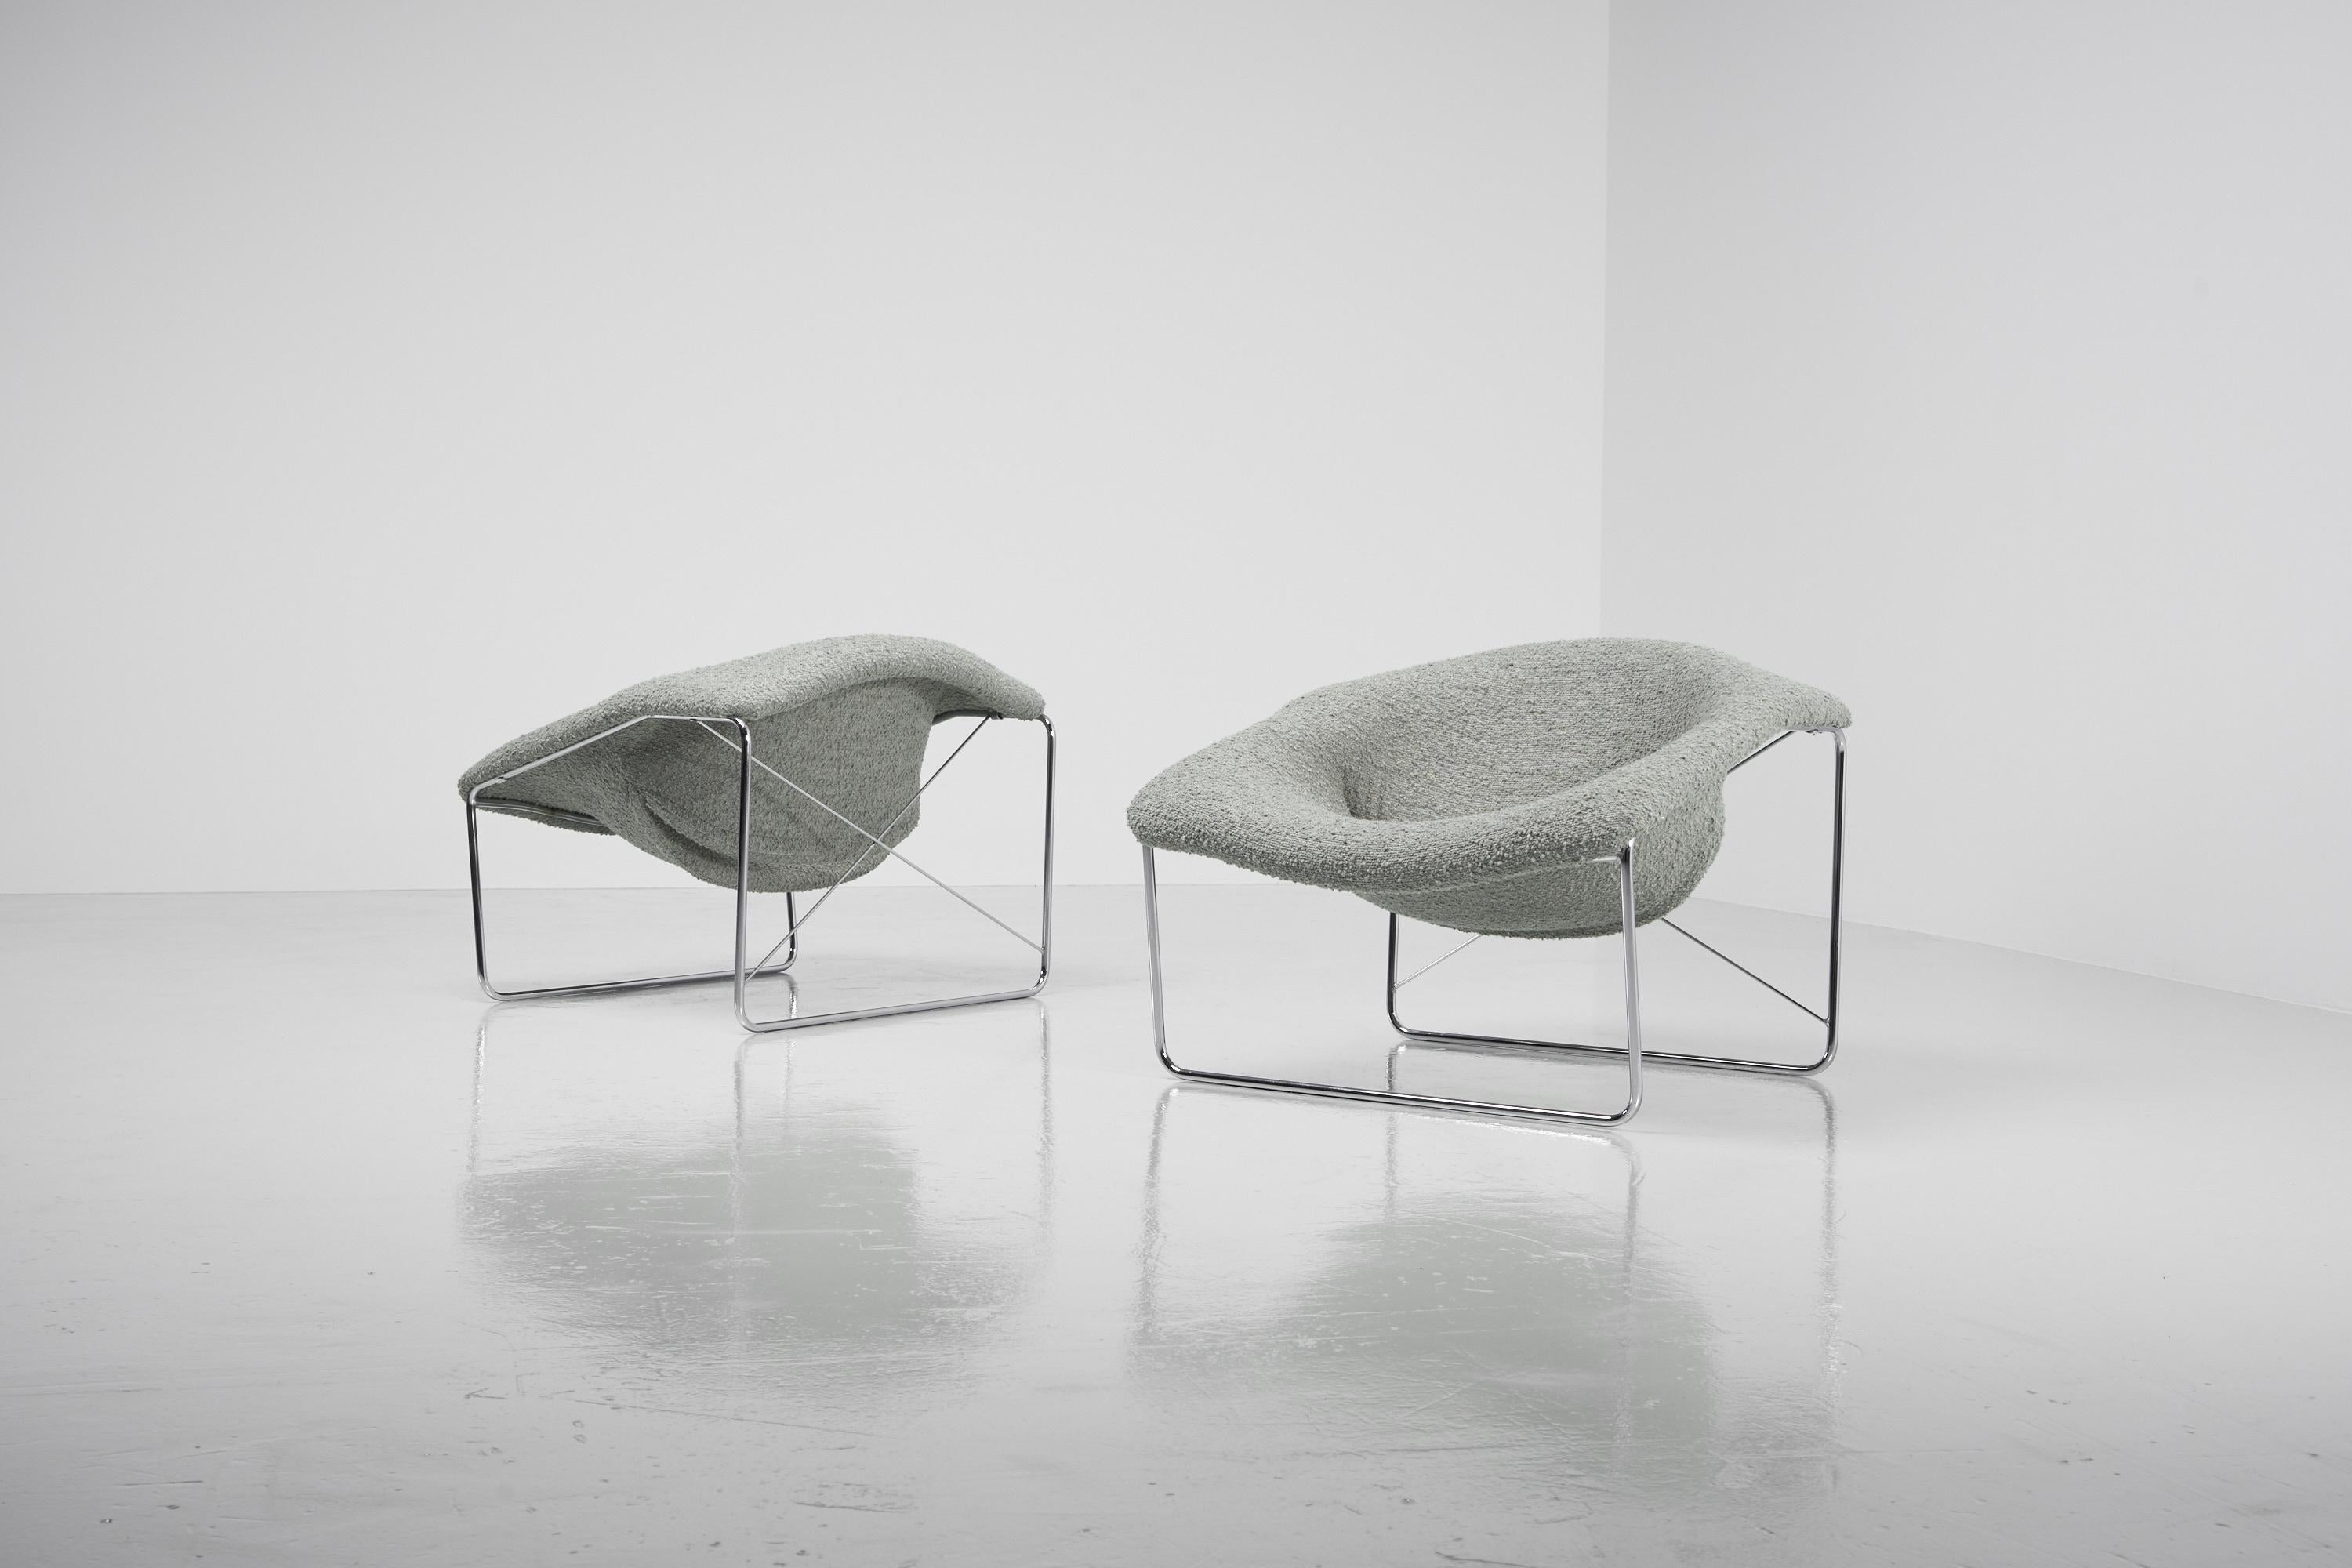 Atemberaubend geformtes Paar so genannter 'Cubique'-Sessel, entworfen von Olivier Mourgue und hergestellt von Airborne, Frankreich 1968. Diese Stühle haben ein solides Stahlrohrgestell, das verchromt ist, und die Sitze sind mit einem sehr schönen